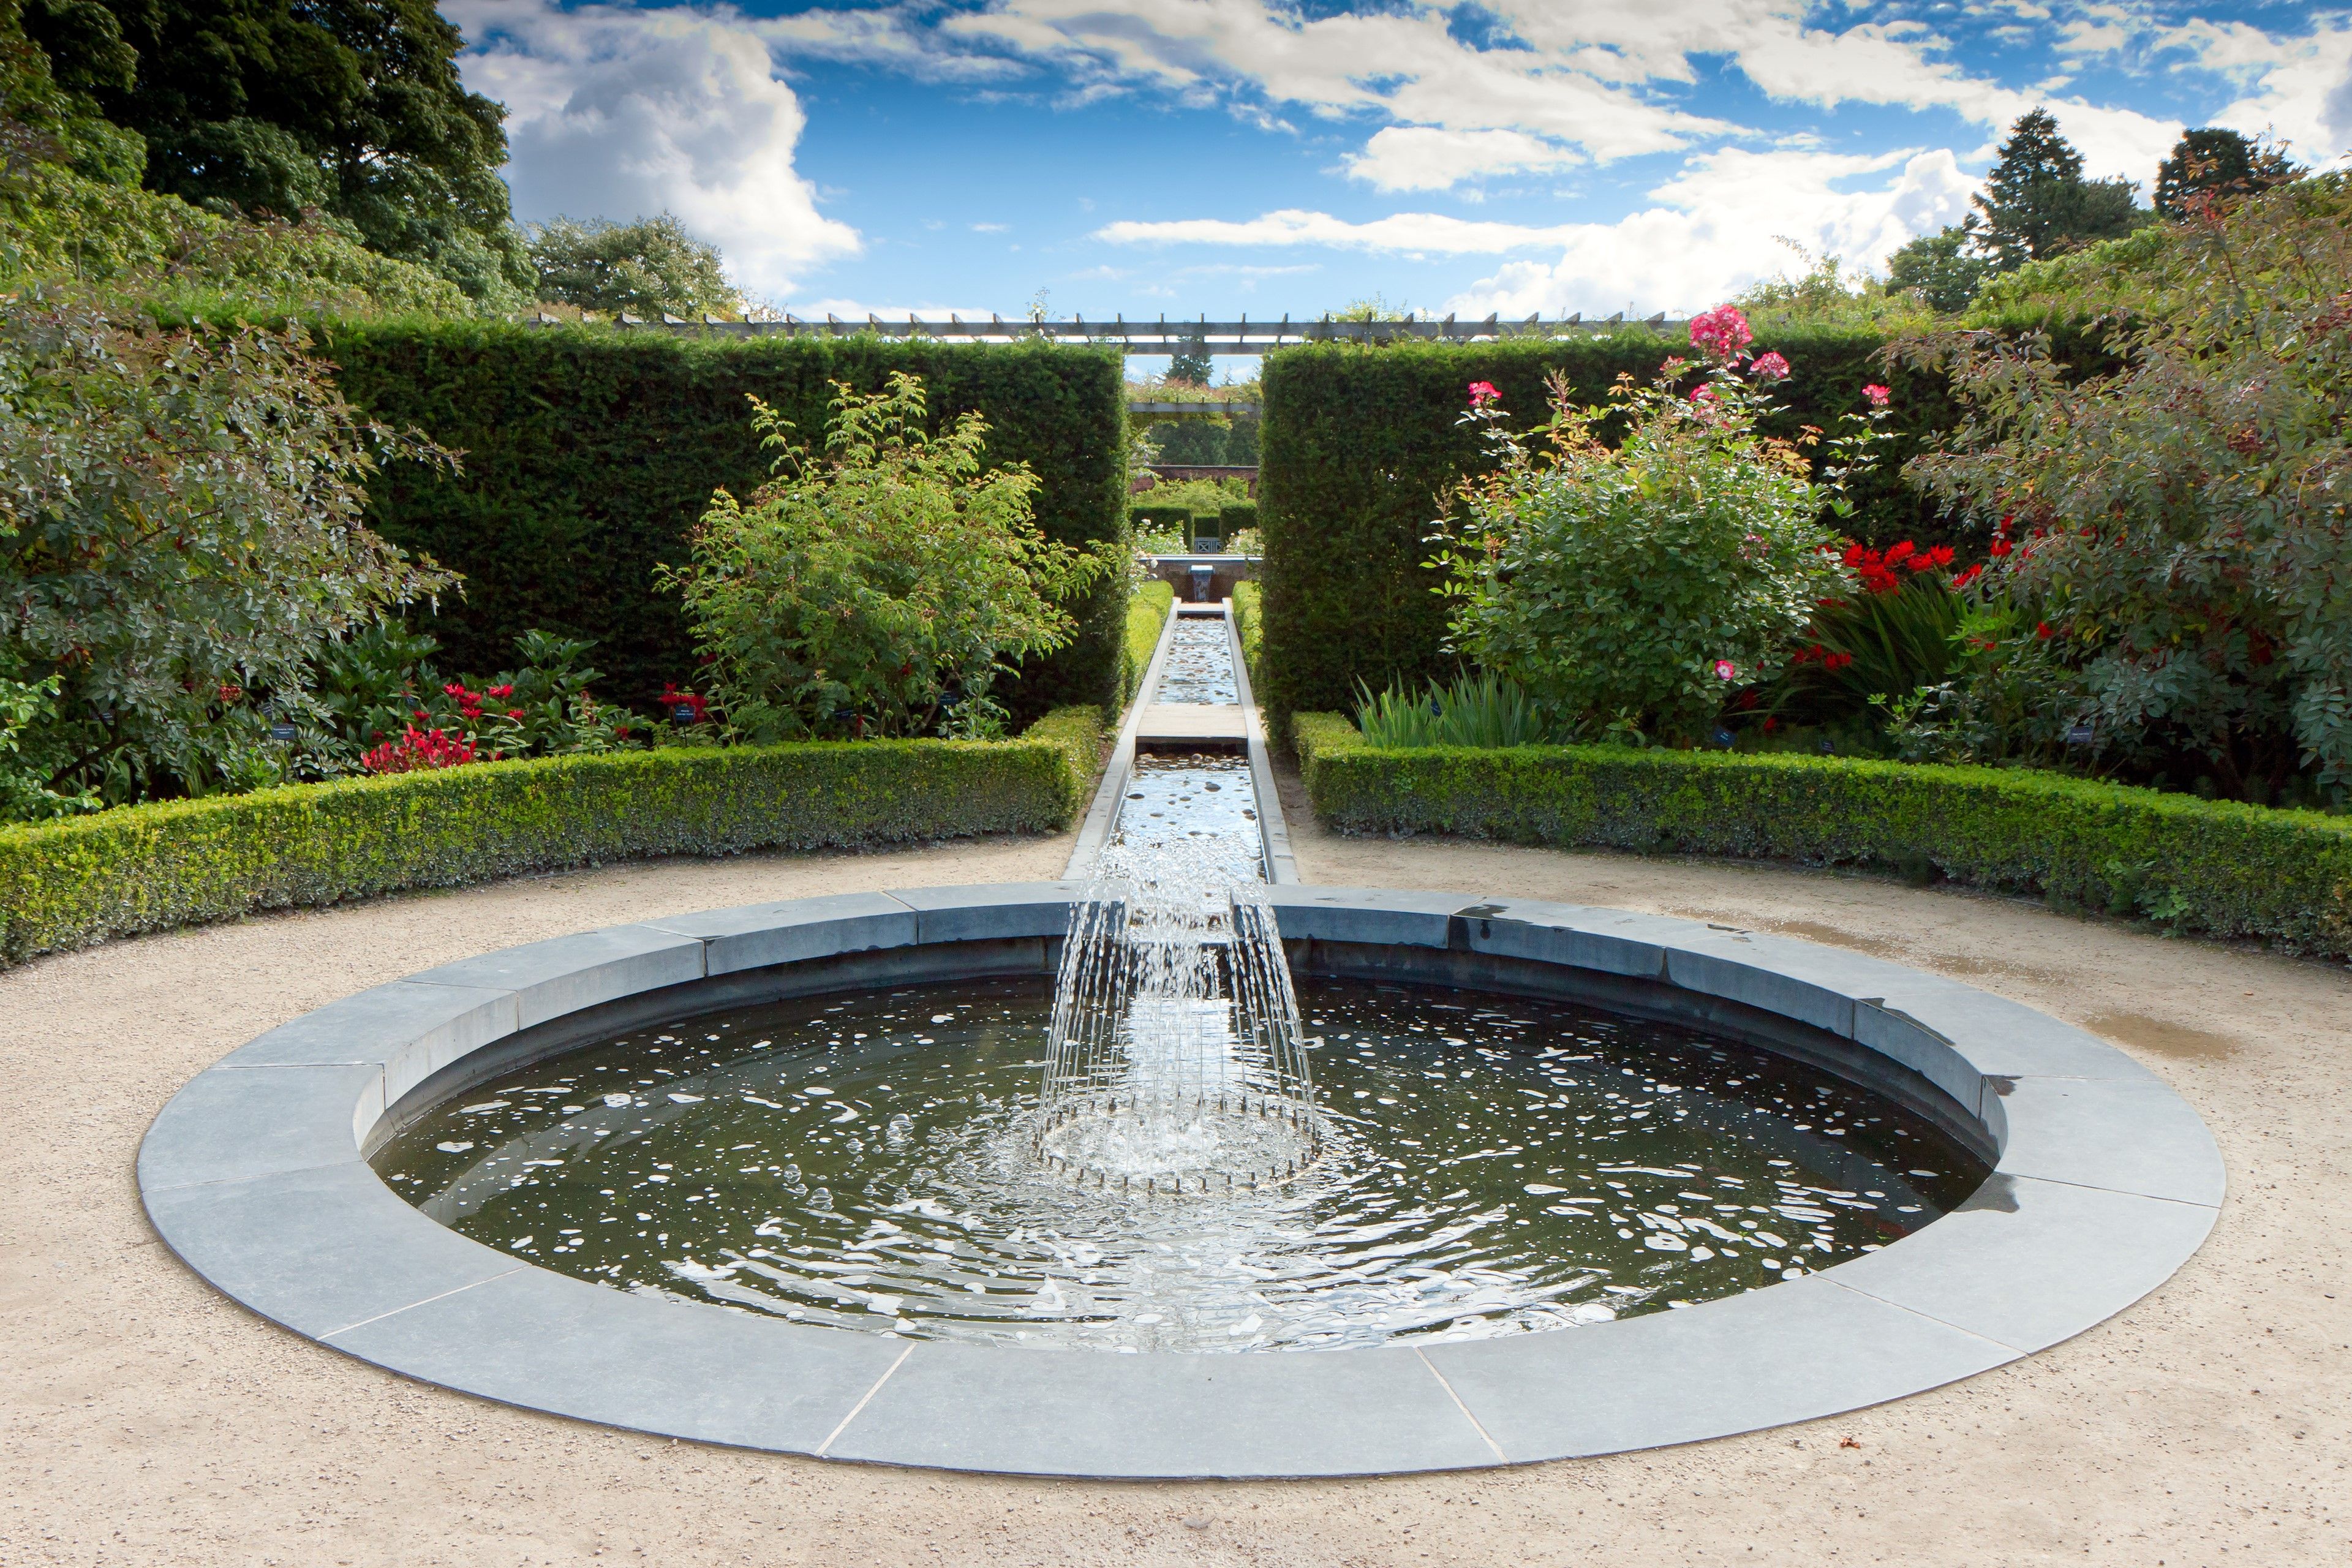 Water feature in Alnwick Castle gardens